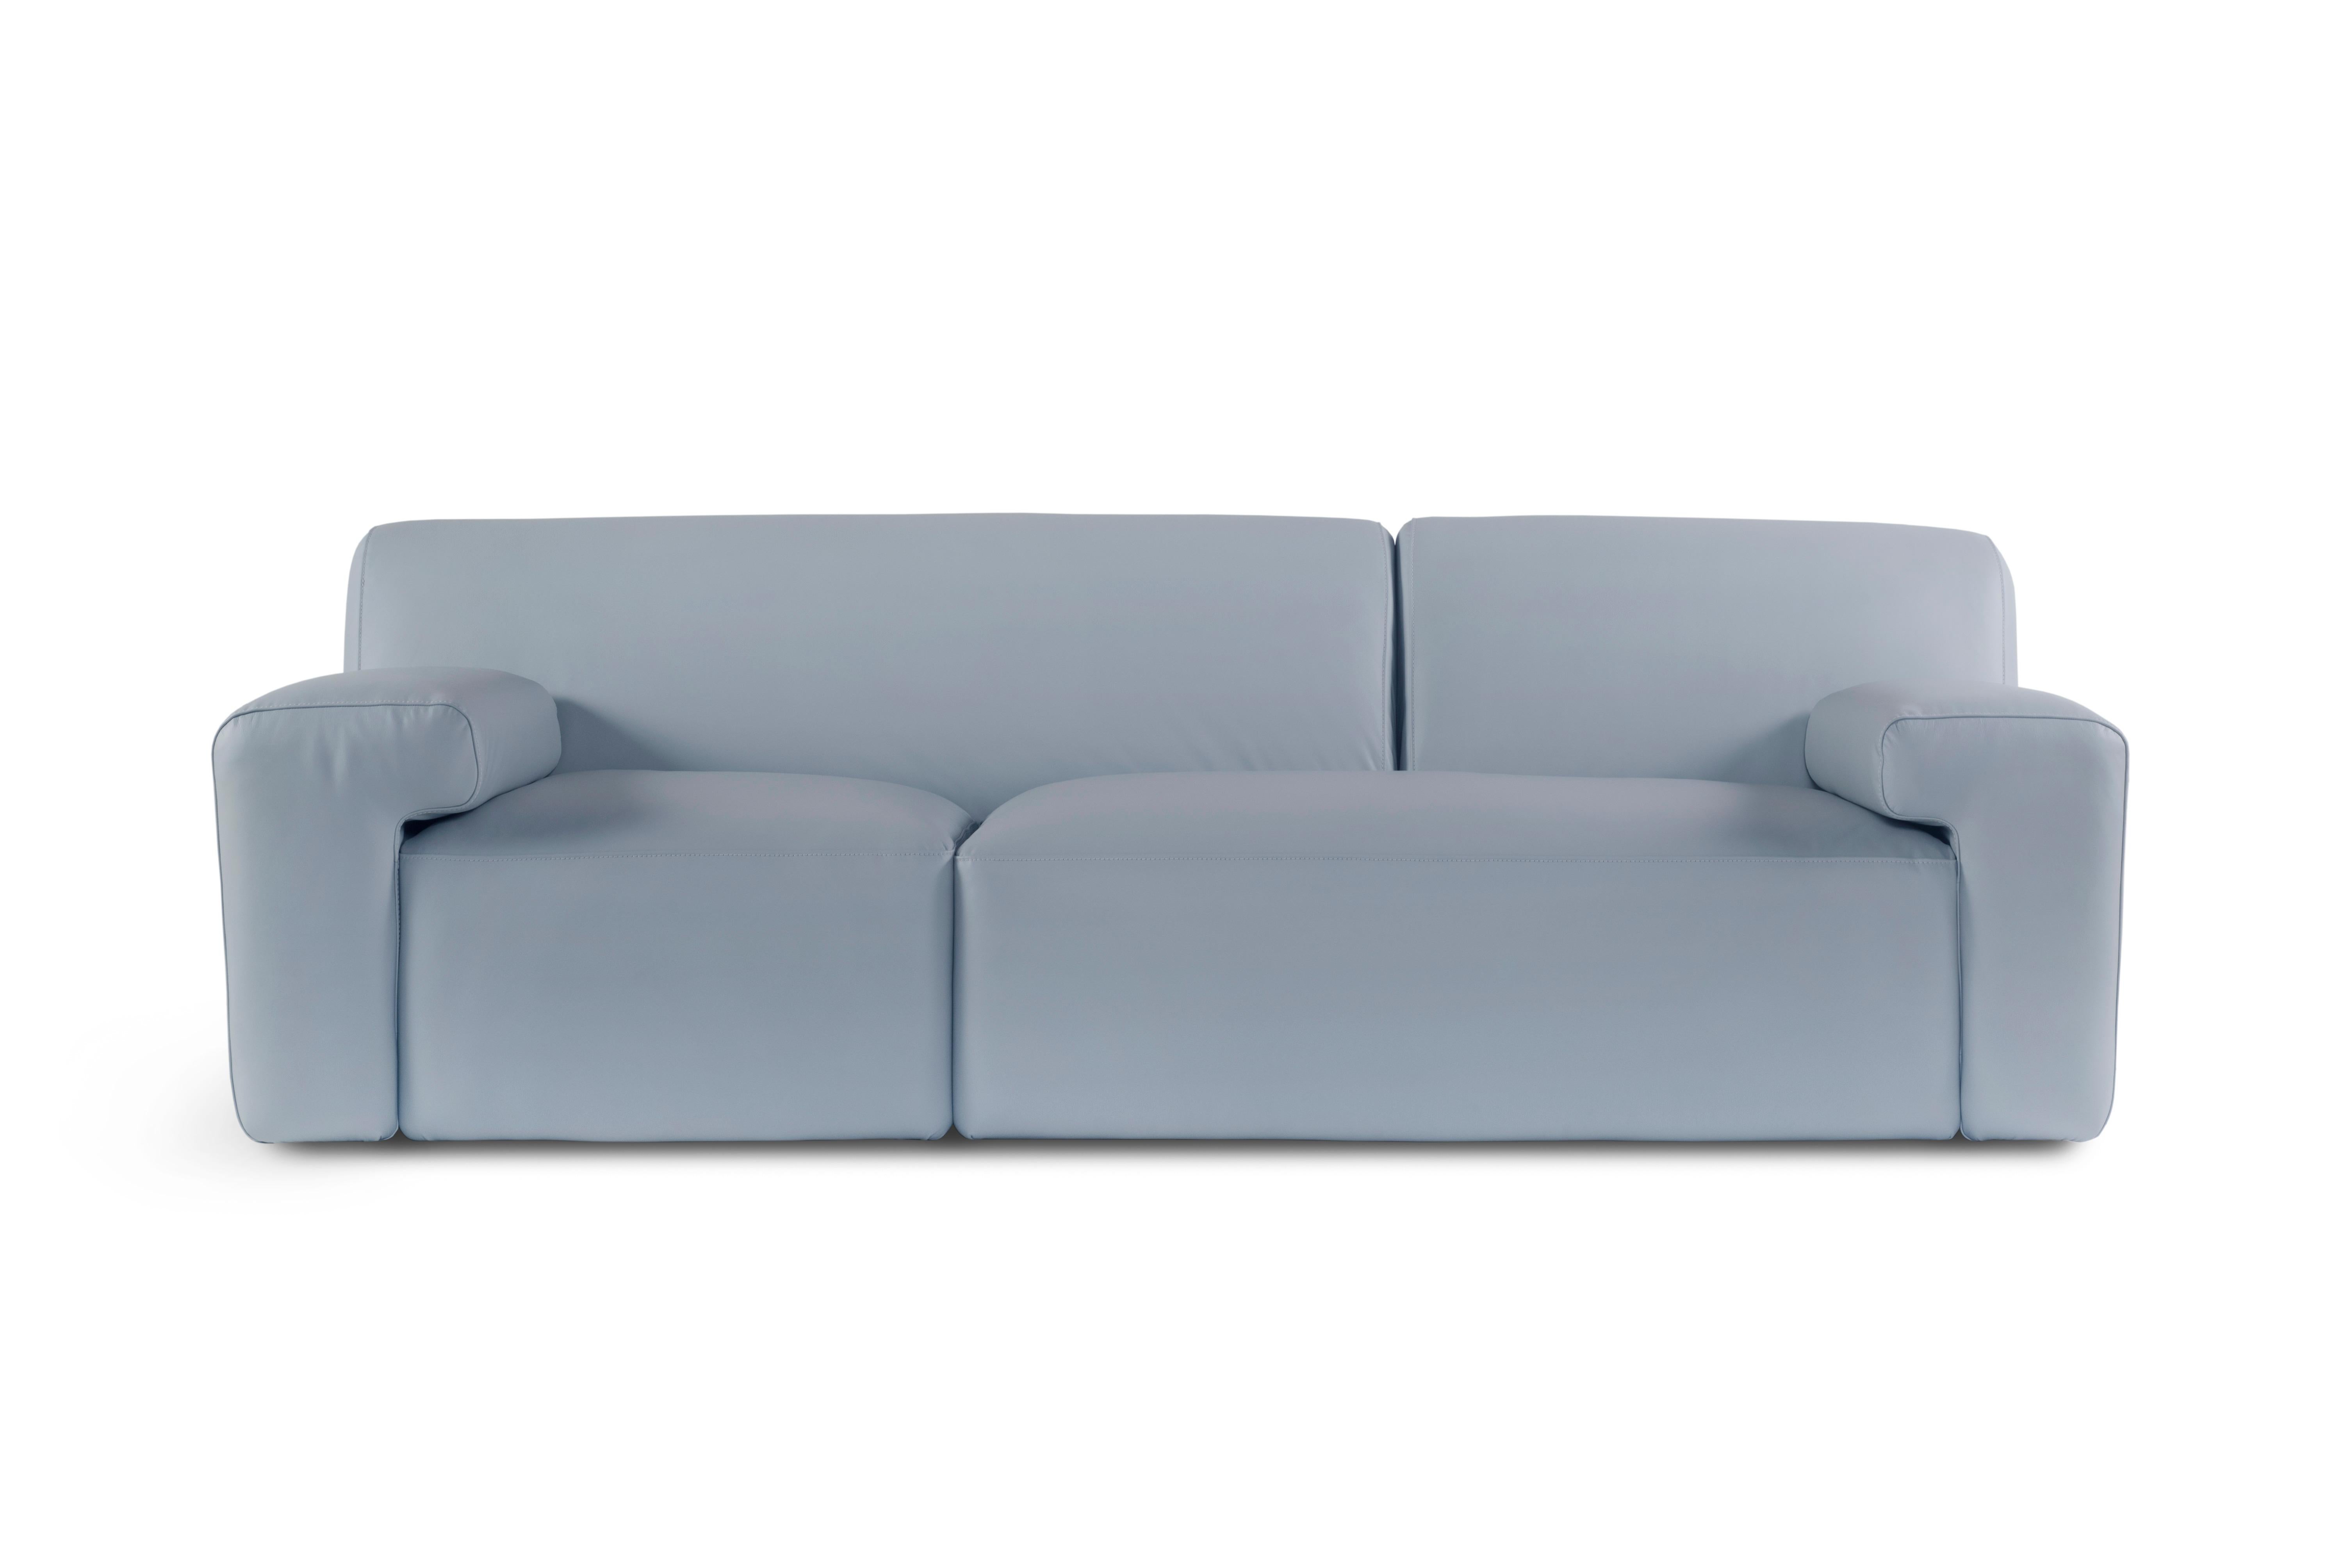 Almourol Sofa, Contemporary Collection, handgefertigt in Portugal - Europa von Greenapple.

Das Ledersofa Almourol ist von den markanten Konturen des Schlosses Almourol inspiriert. Das asymmetrische Design des Ledersofas ähnelt der unregelmäßigen